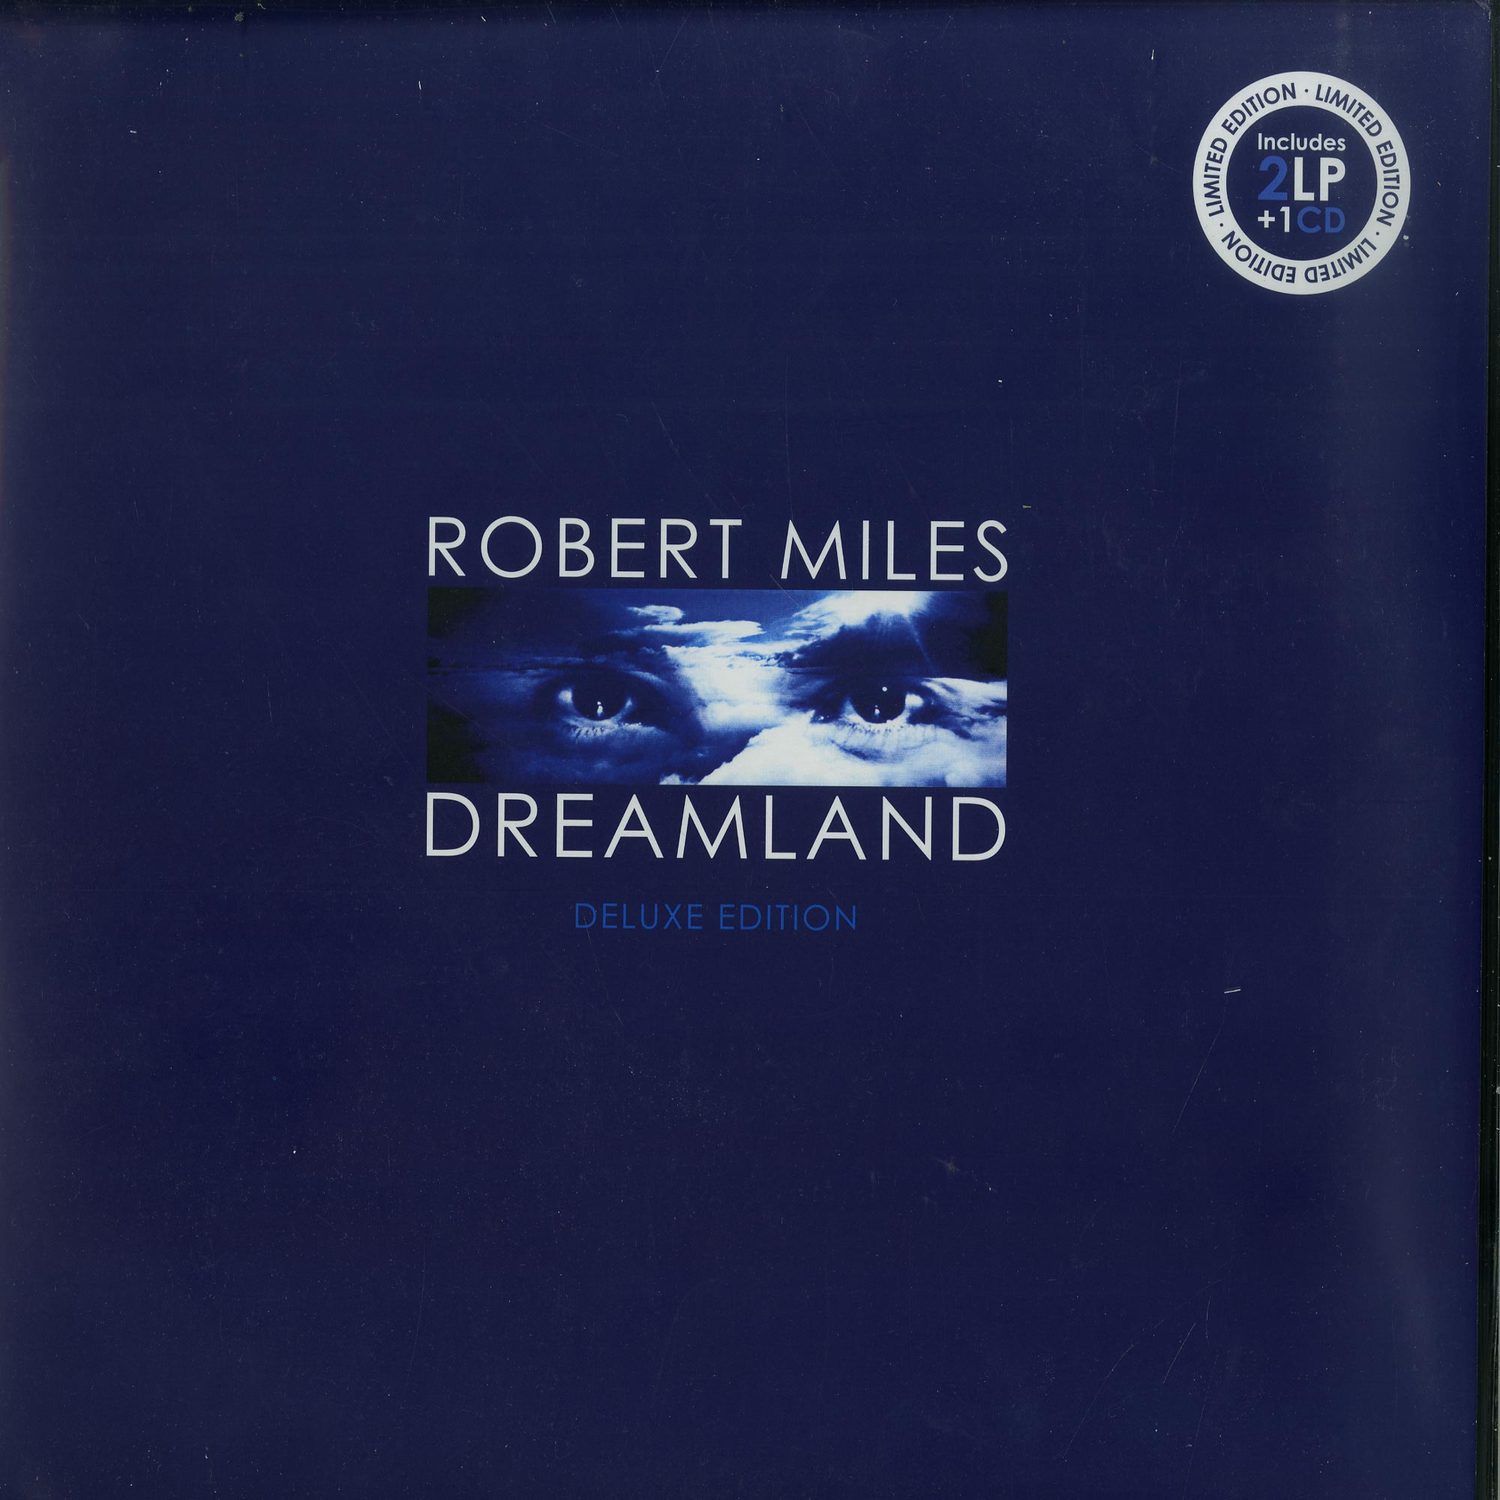 Robert miles dreaming. Robert Miles Dreamland 1996. Robert Miles Dreamland винил. Robert Miles "Dreamland (2lp)". Robert Miles - Dreamland [the Winter Edition] (1996).